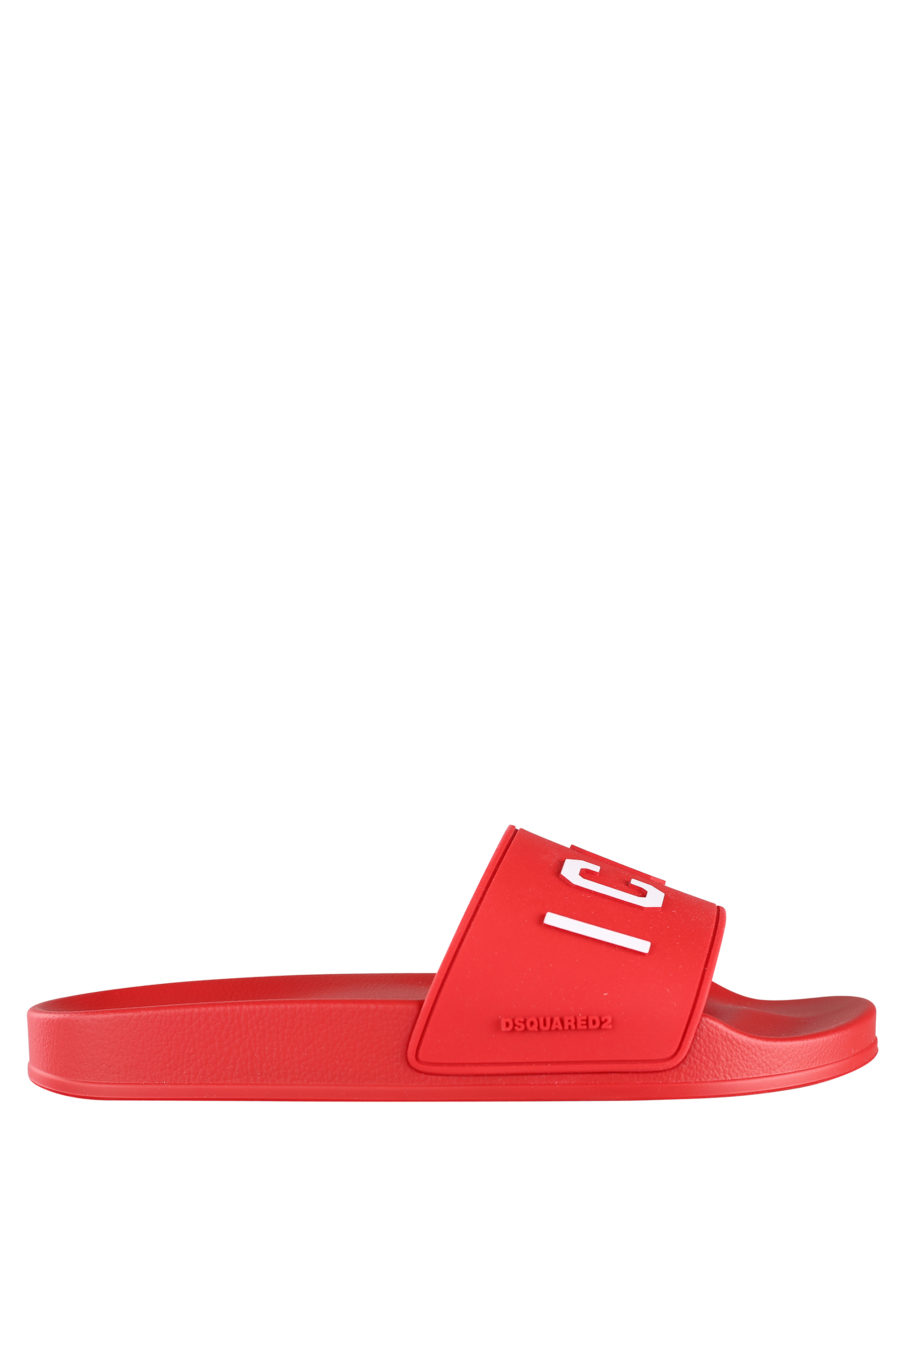 Rote Flip Flops mit weißem "Icon"-Logo - IMG 9941